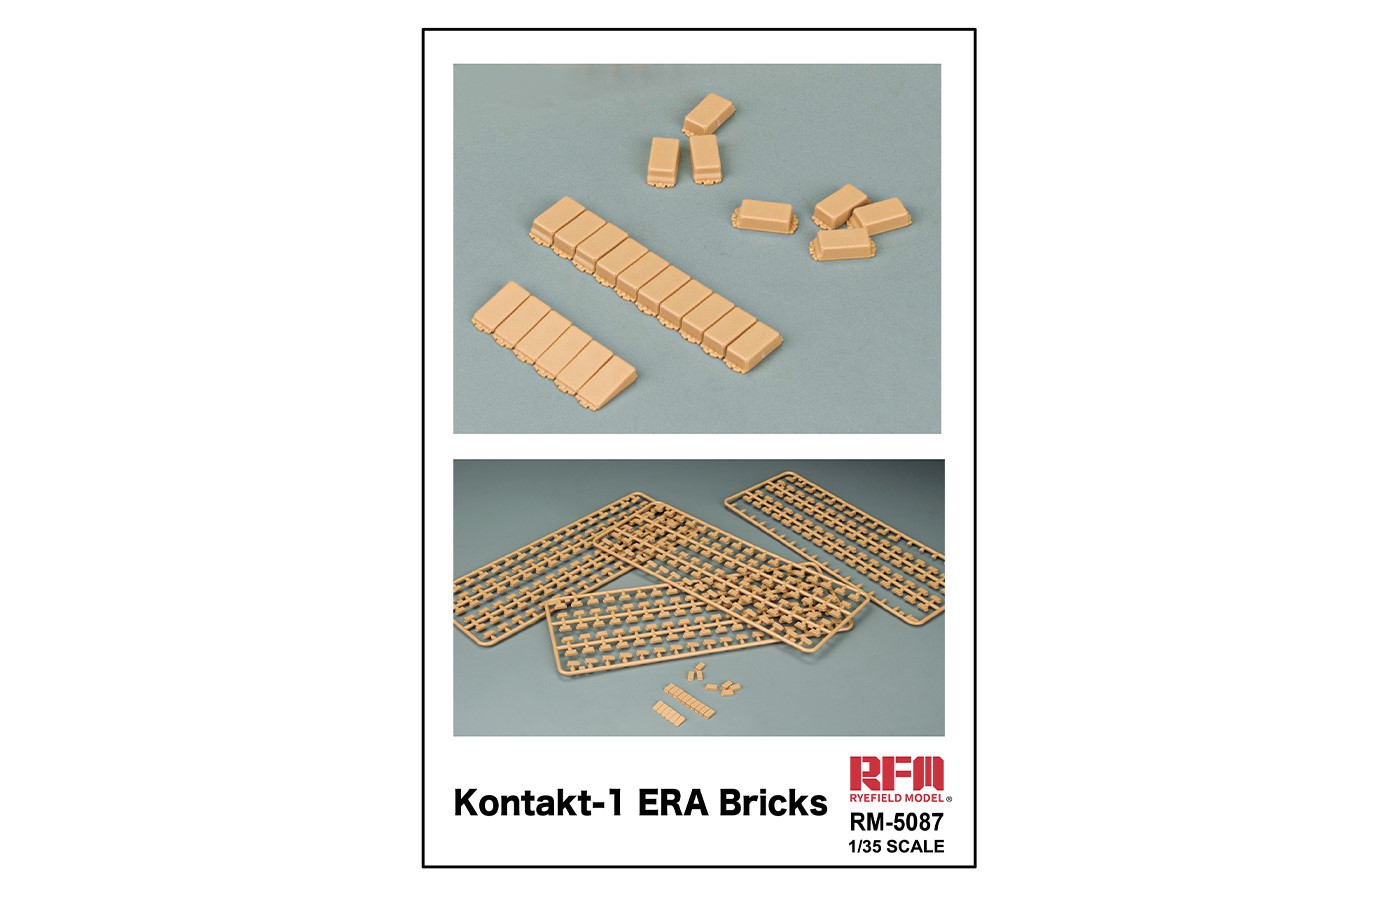 RM-5087 Kontakt-1 ERA Bricks